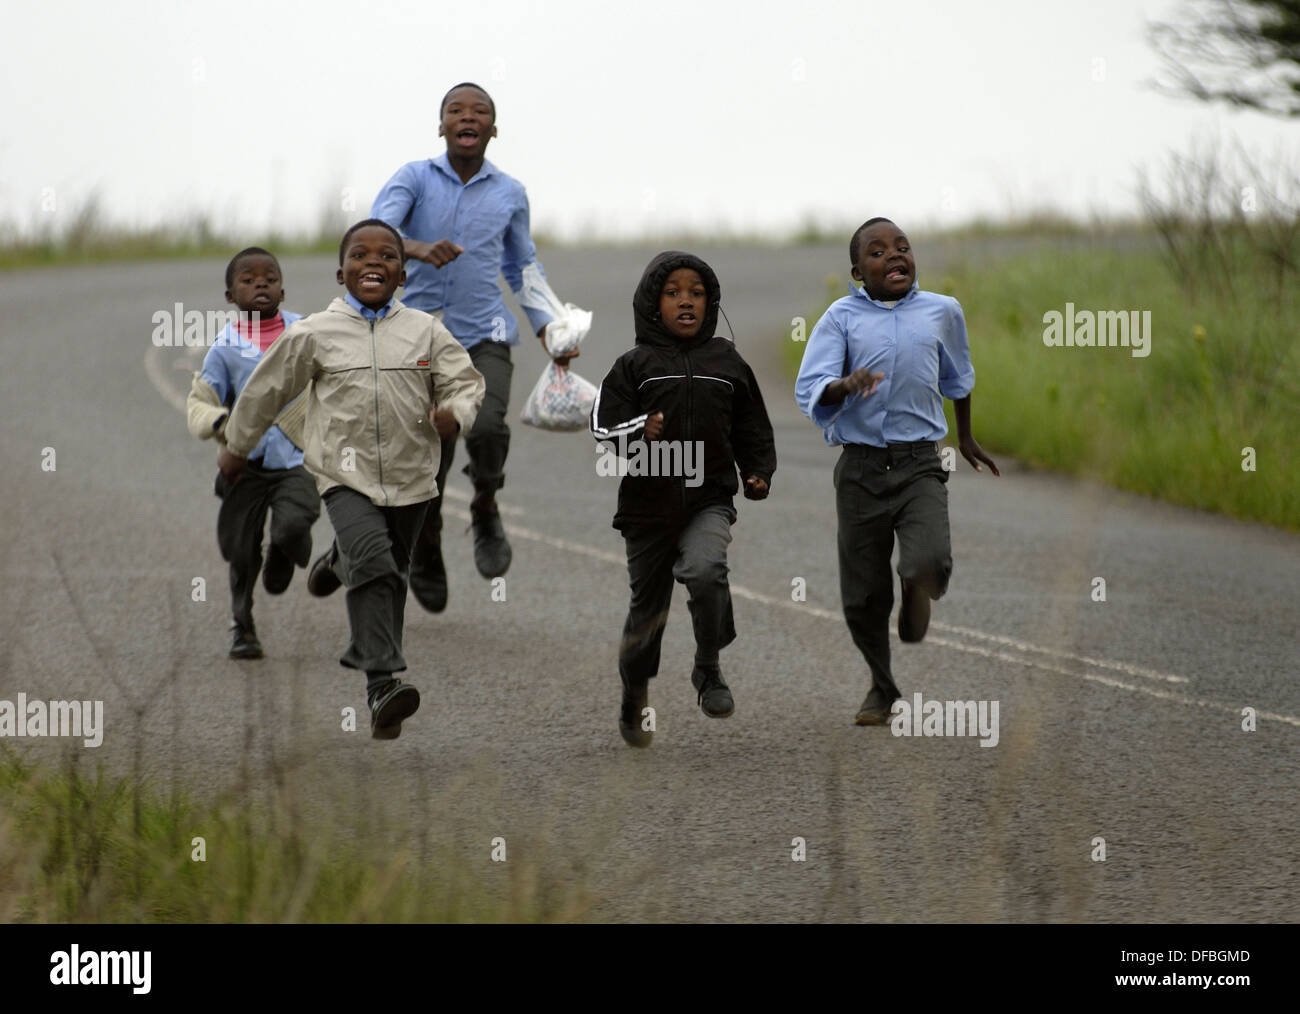 Children run to school to school in Umlaas Road, 18 October 2007. Stock Photo